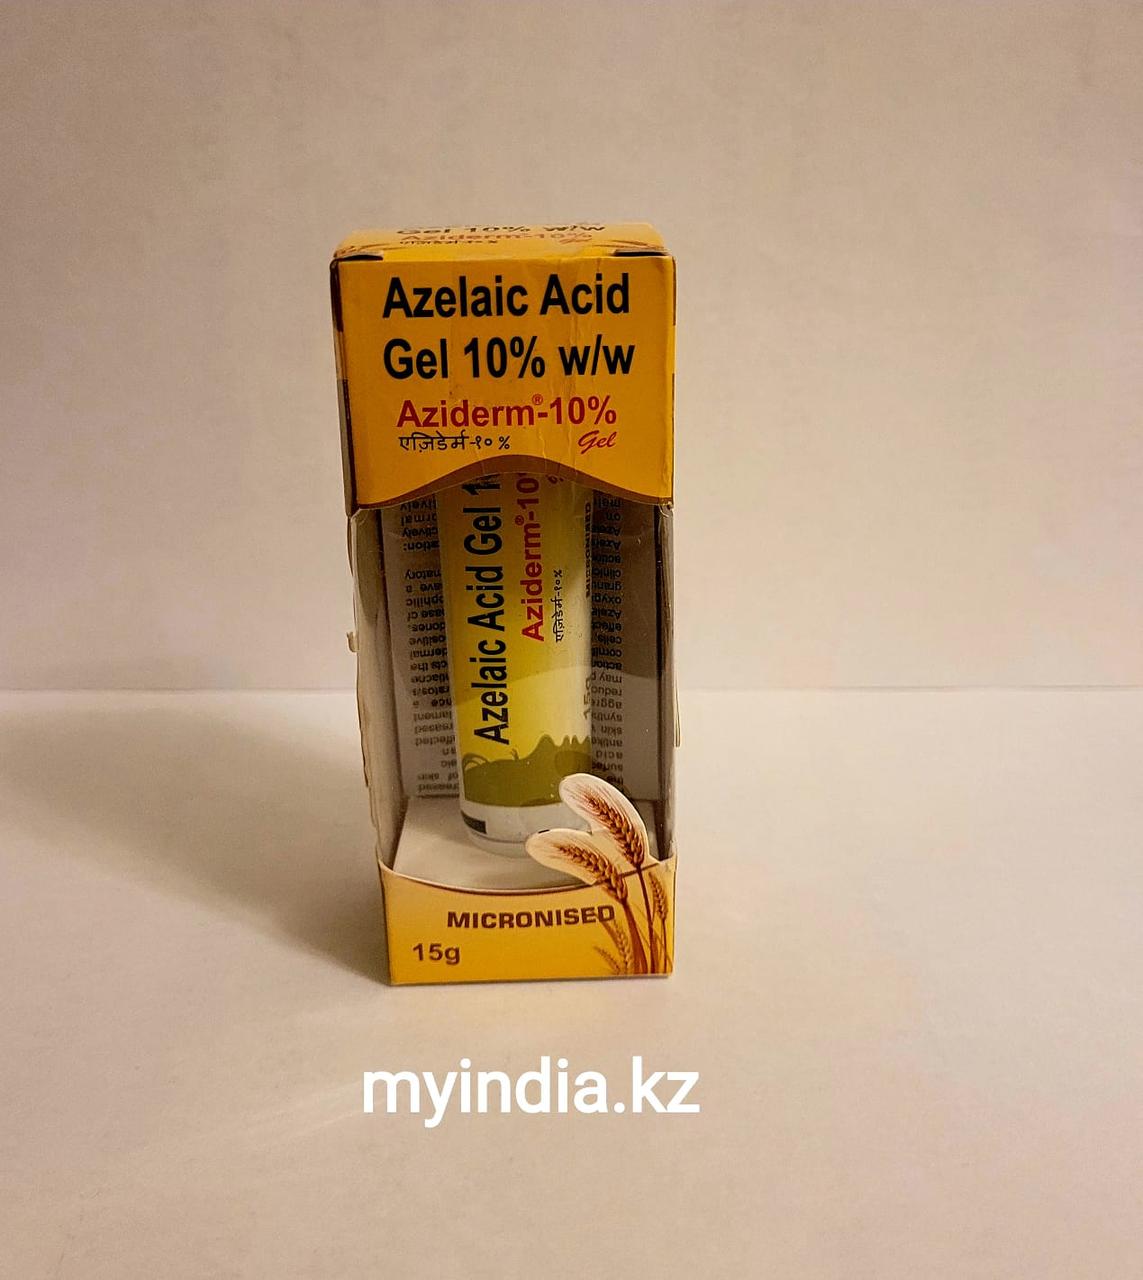 Азидерм 10%, гель с азелаиновой кислотой – Aziderm Gel 10%, Azelaic Acid